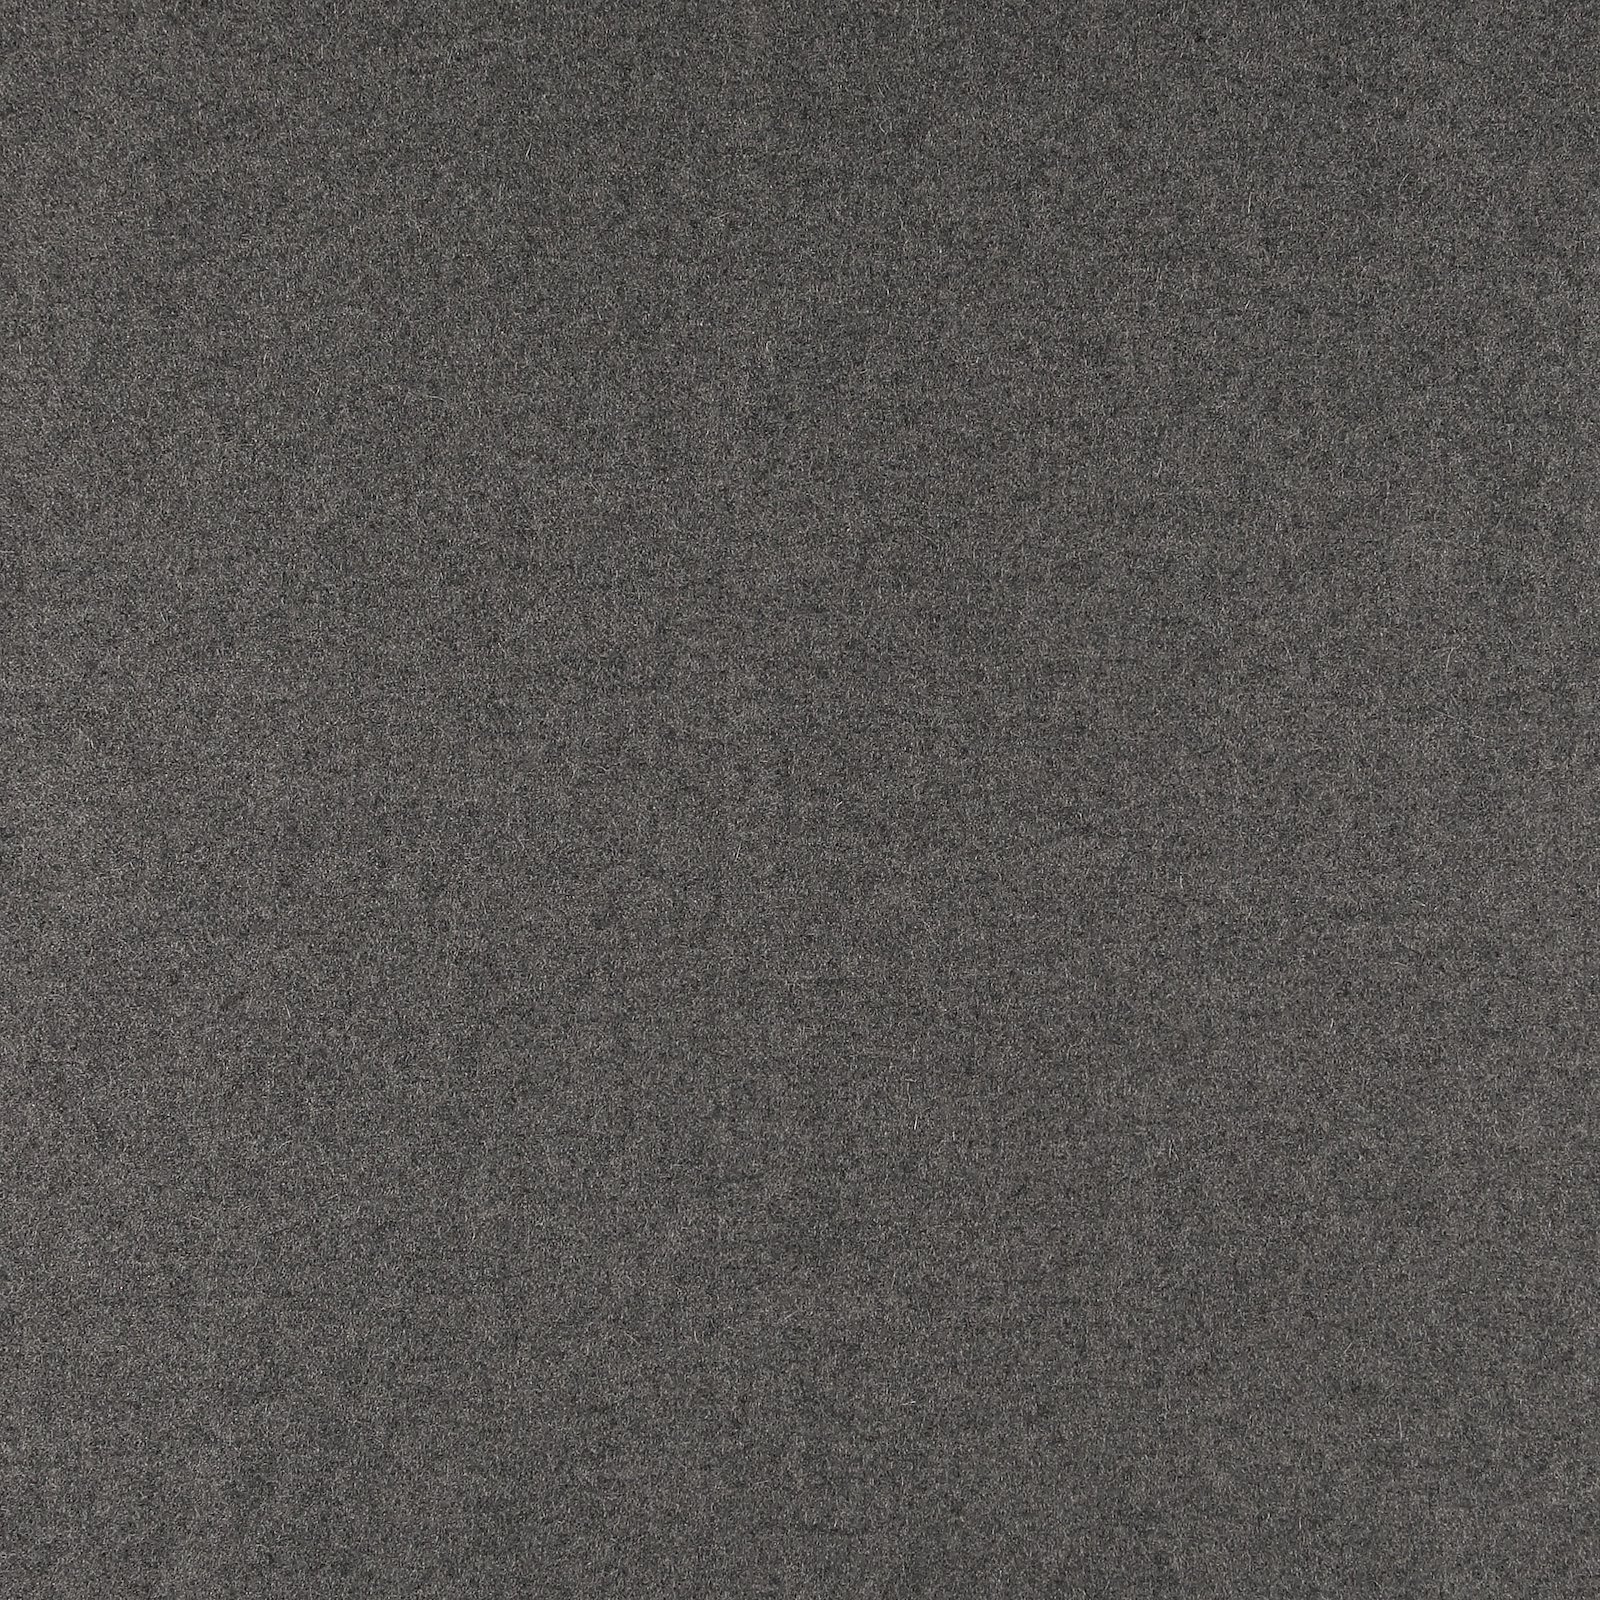 Upholstery wool dark grey melange 823933_pack_solid.jpg